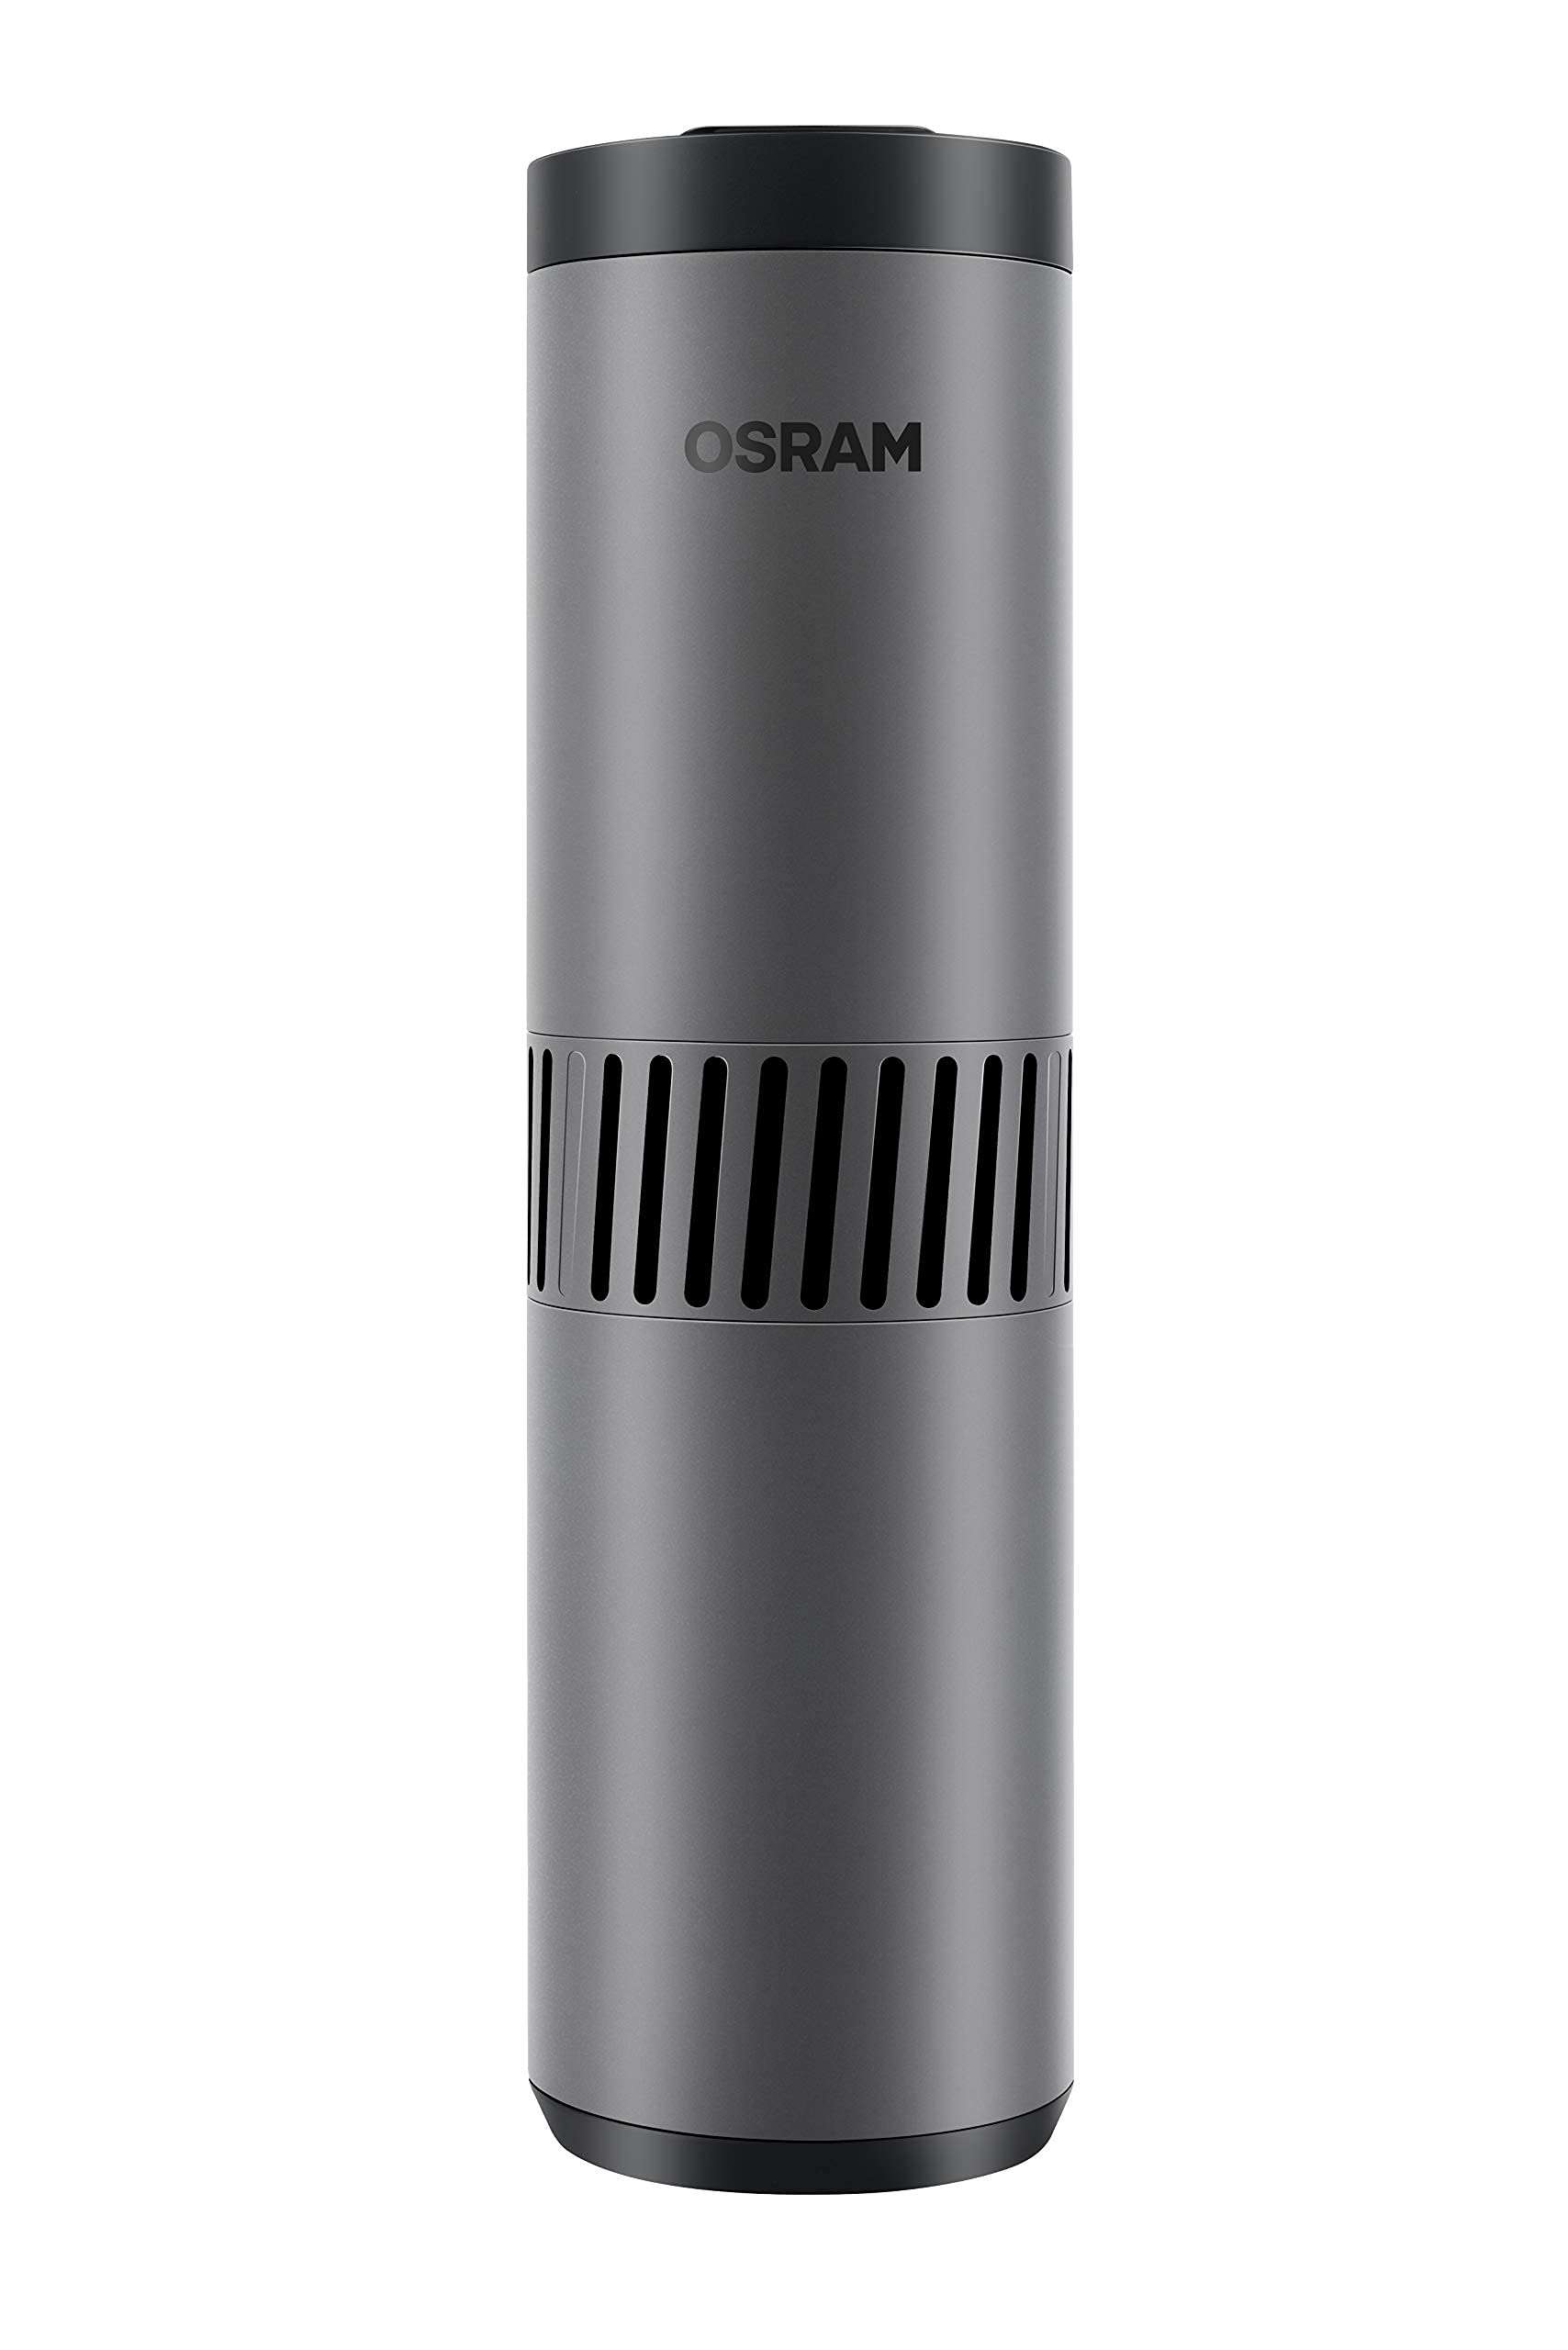 OSRAM UVCOMPACT AirZing UV-Compact, tragbarer Luftreiniger zum Einsatz im Auto und kleineren Räumen, keimtötendes UV-C-Gerät, neutralisiert 99,9% der Viren, Bakterien und Mikroorganismen von Osram